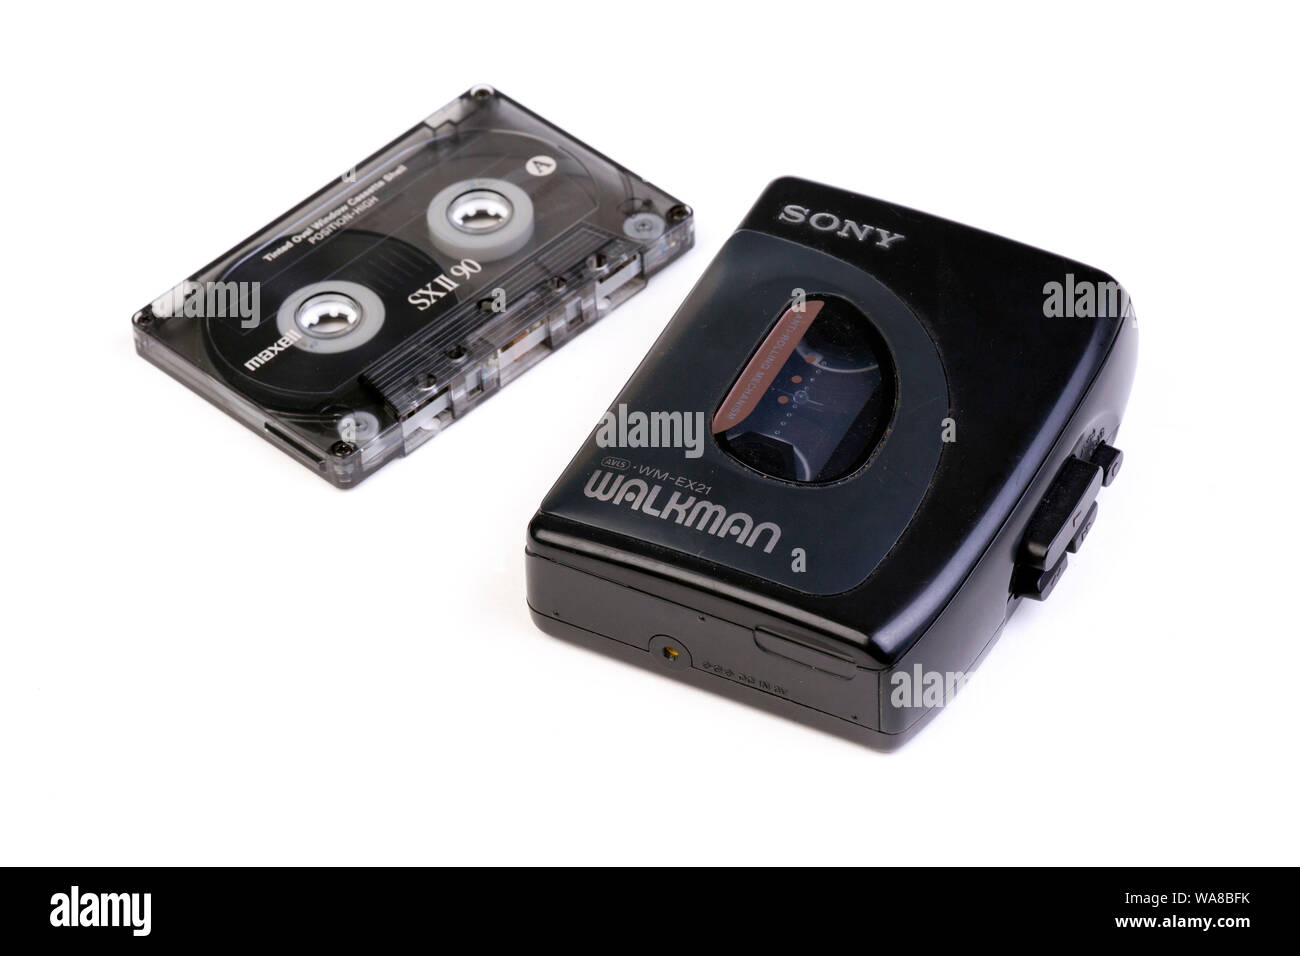 Sony dévoile une cassette à bande magnétique d'une capacité de 185 To